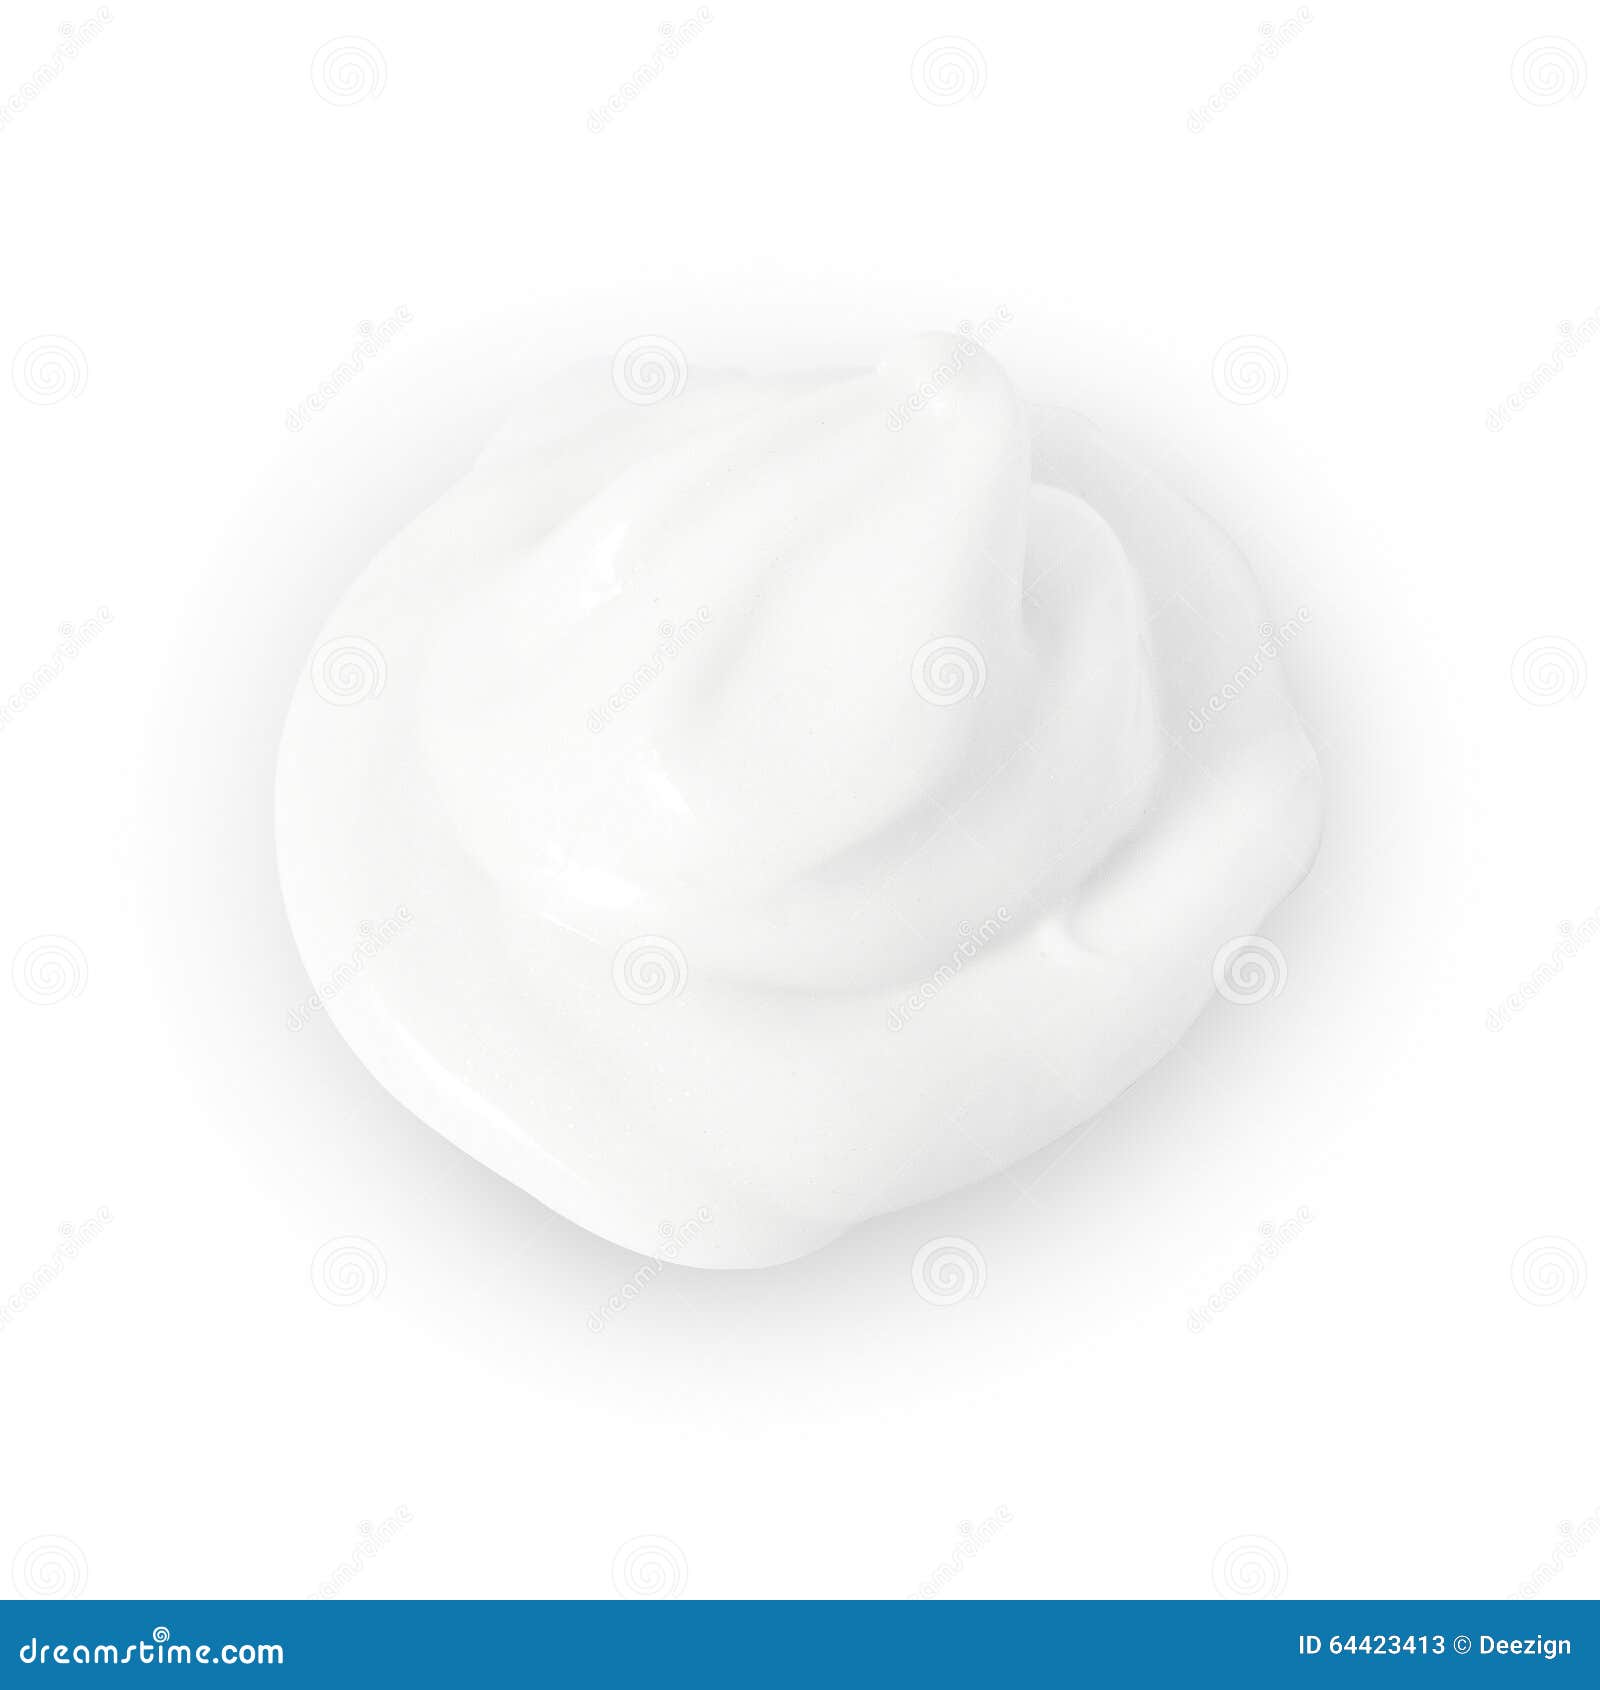 derma enriched moisturizer cream